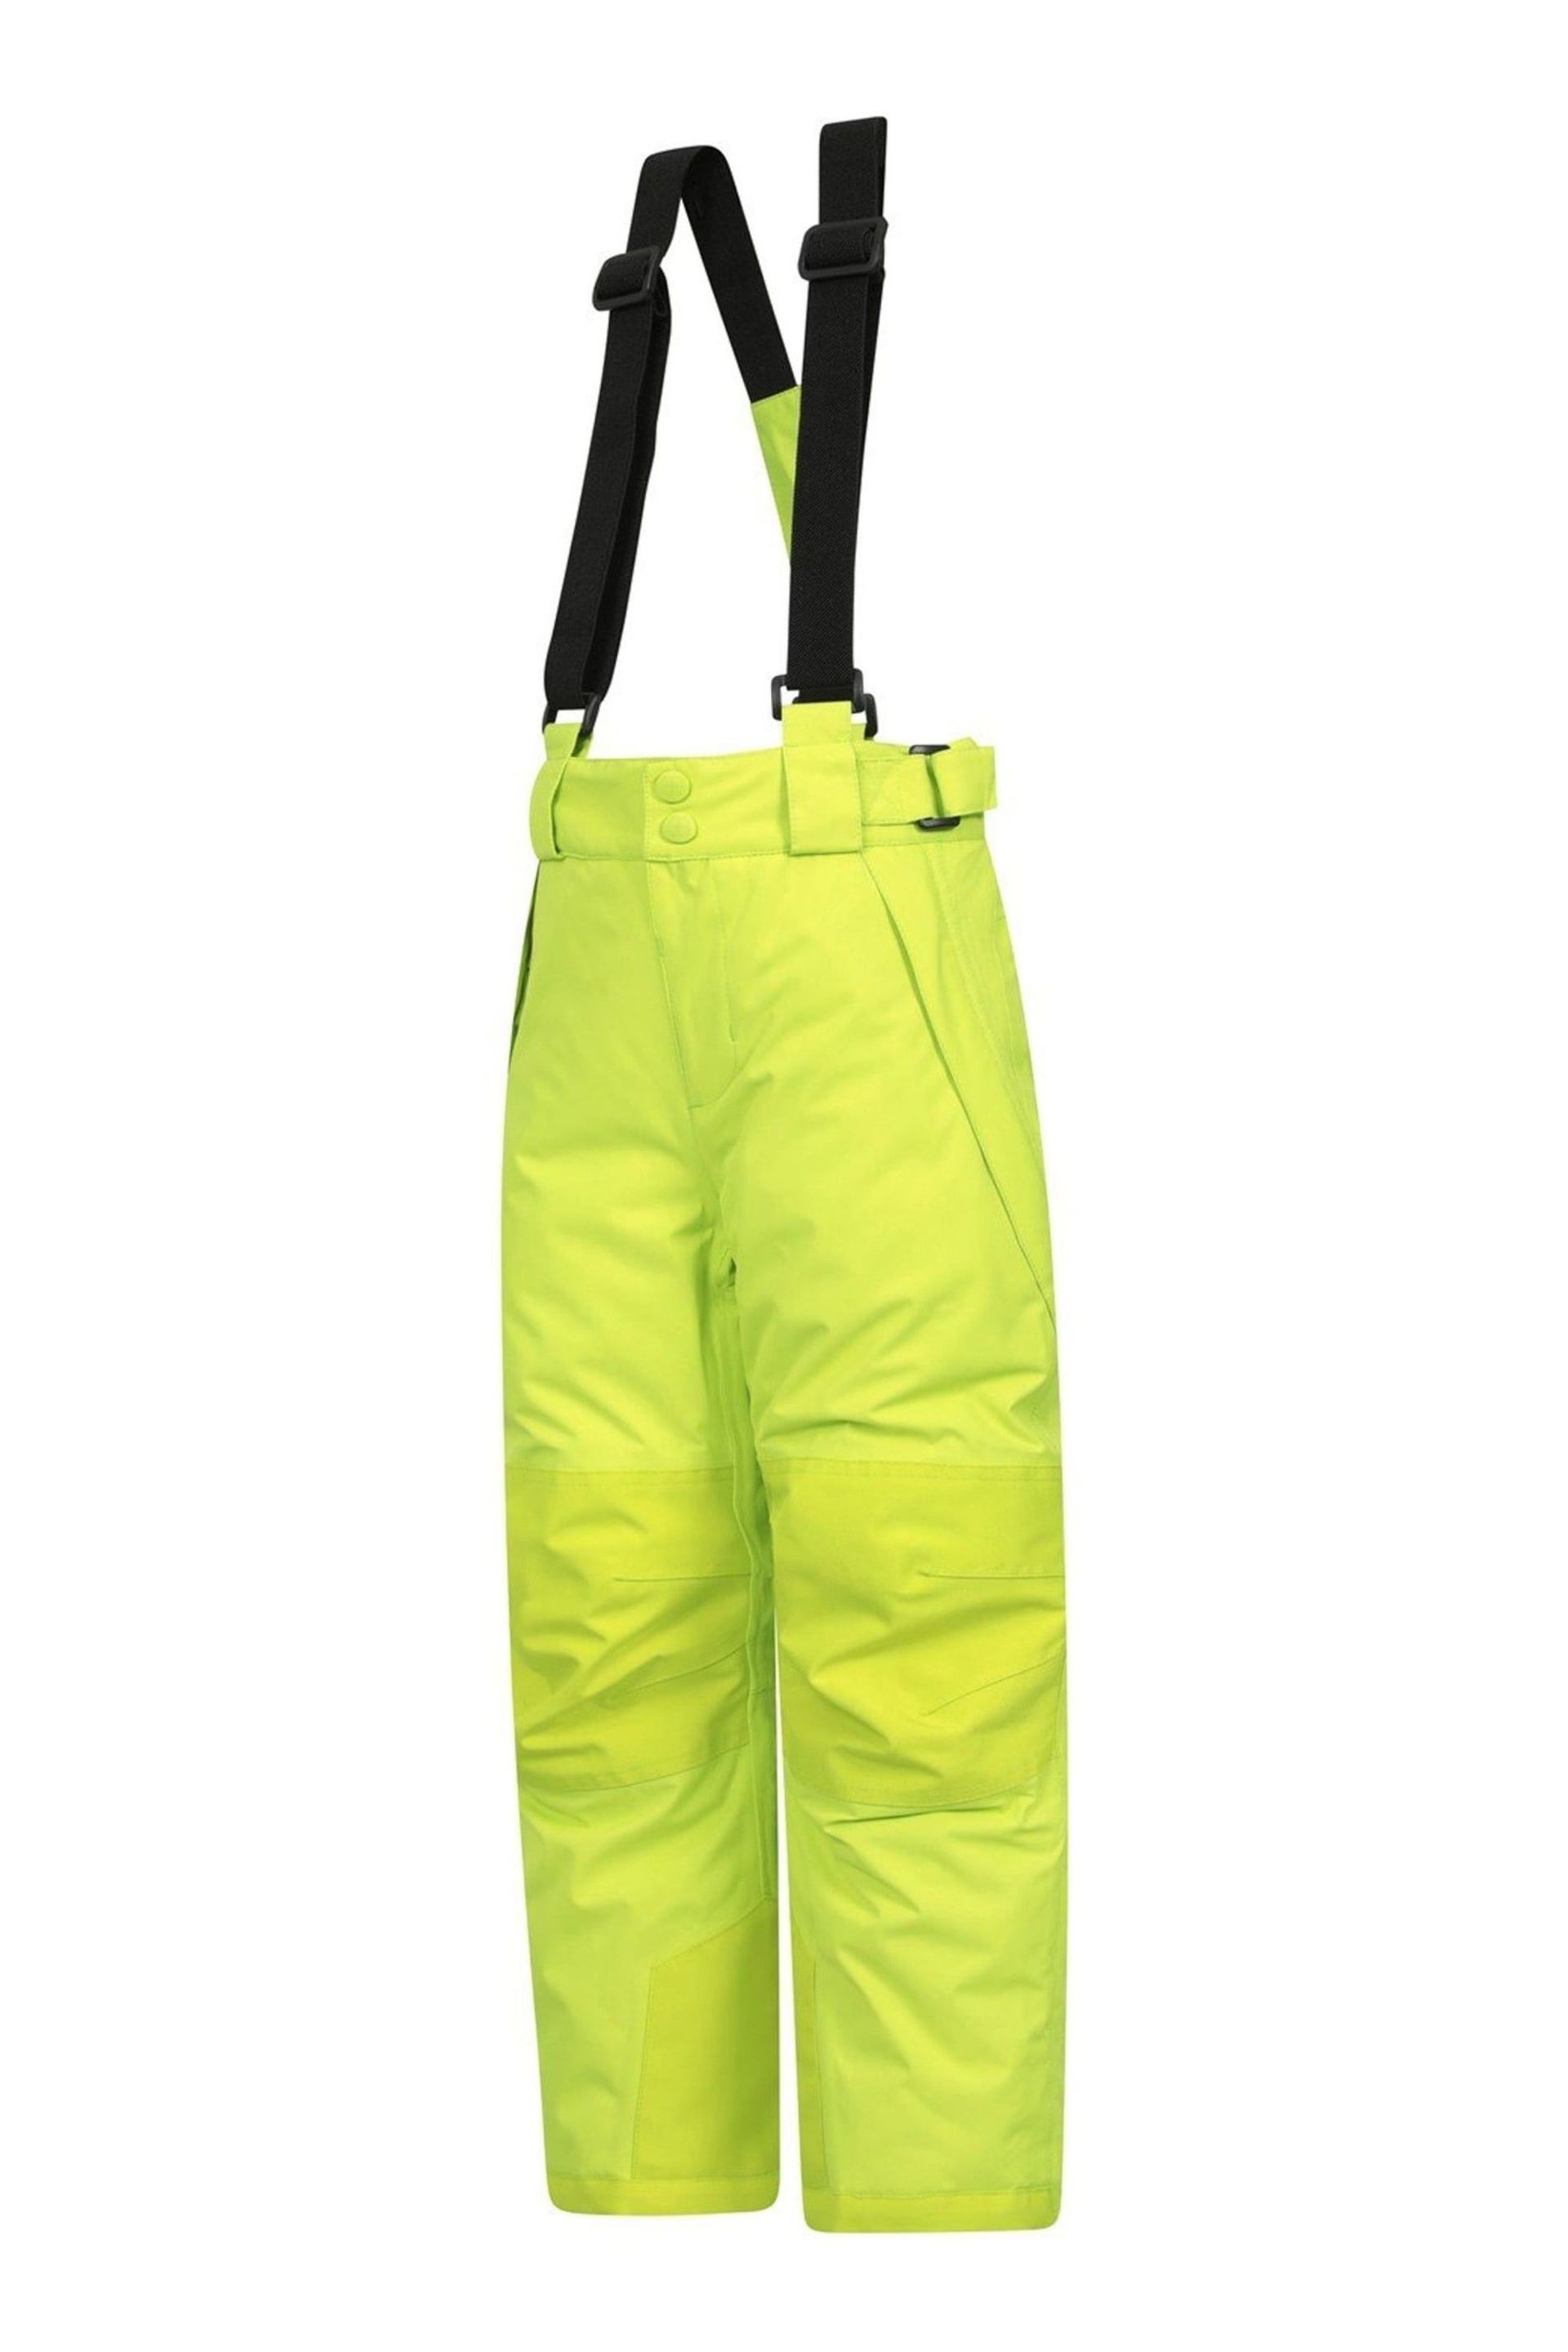 Mountain Warehouse Lime Falcon Extreme Kids Ski Trouser - Image 4 of 7